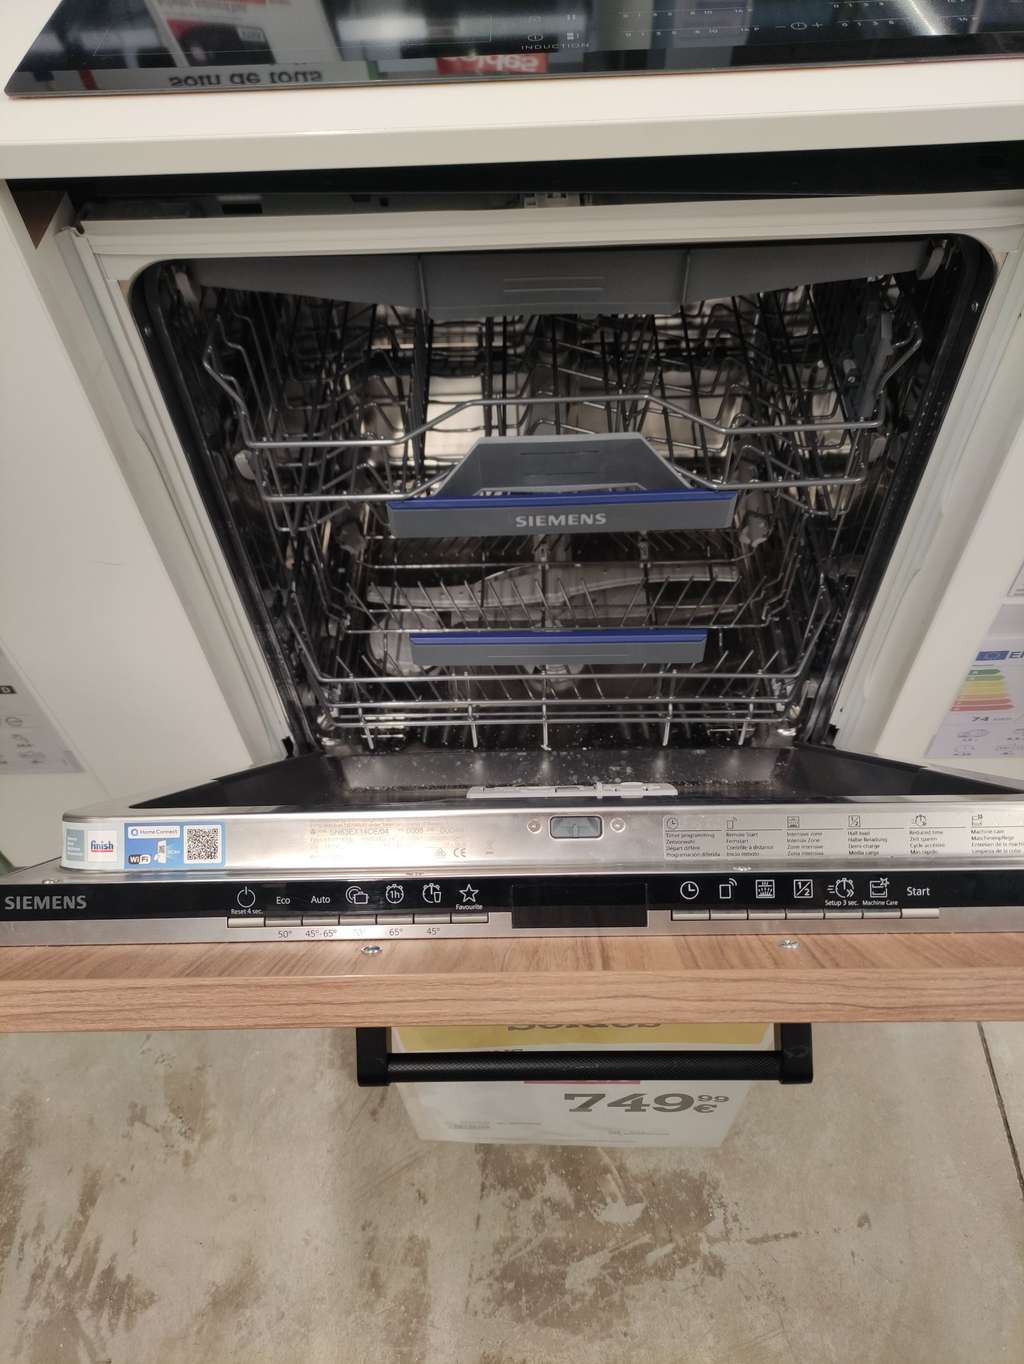 TILLREDA Lave-vaisselle encastrable, 60 cm - IKEA